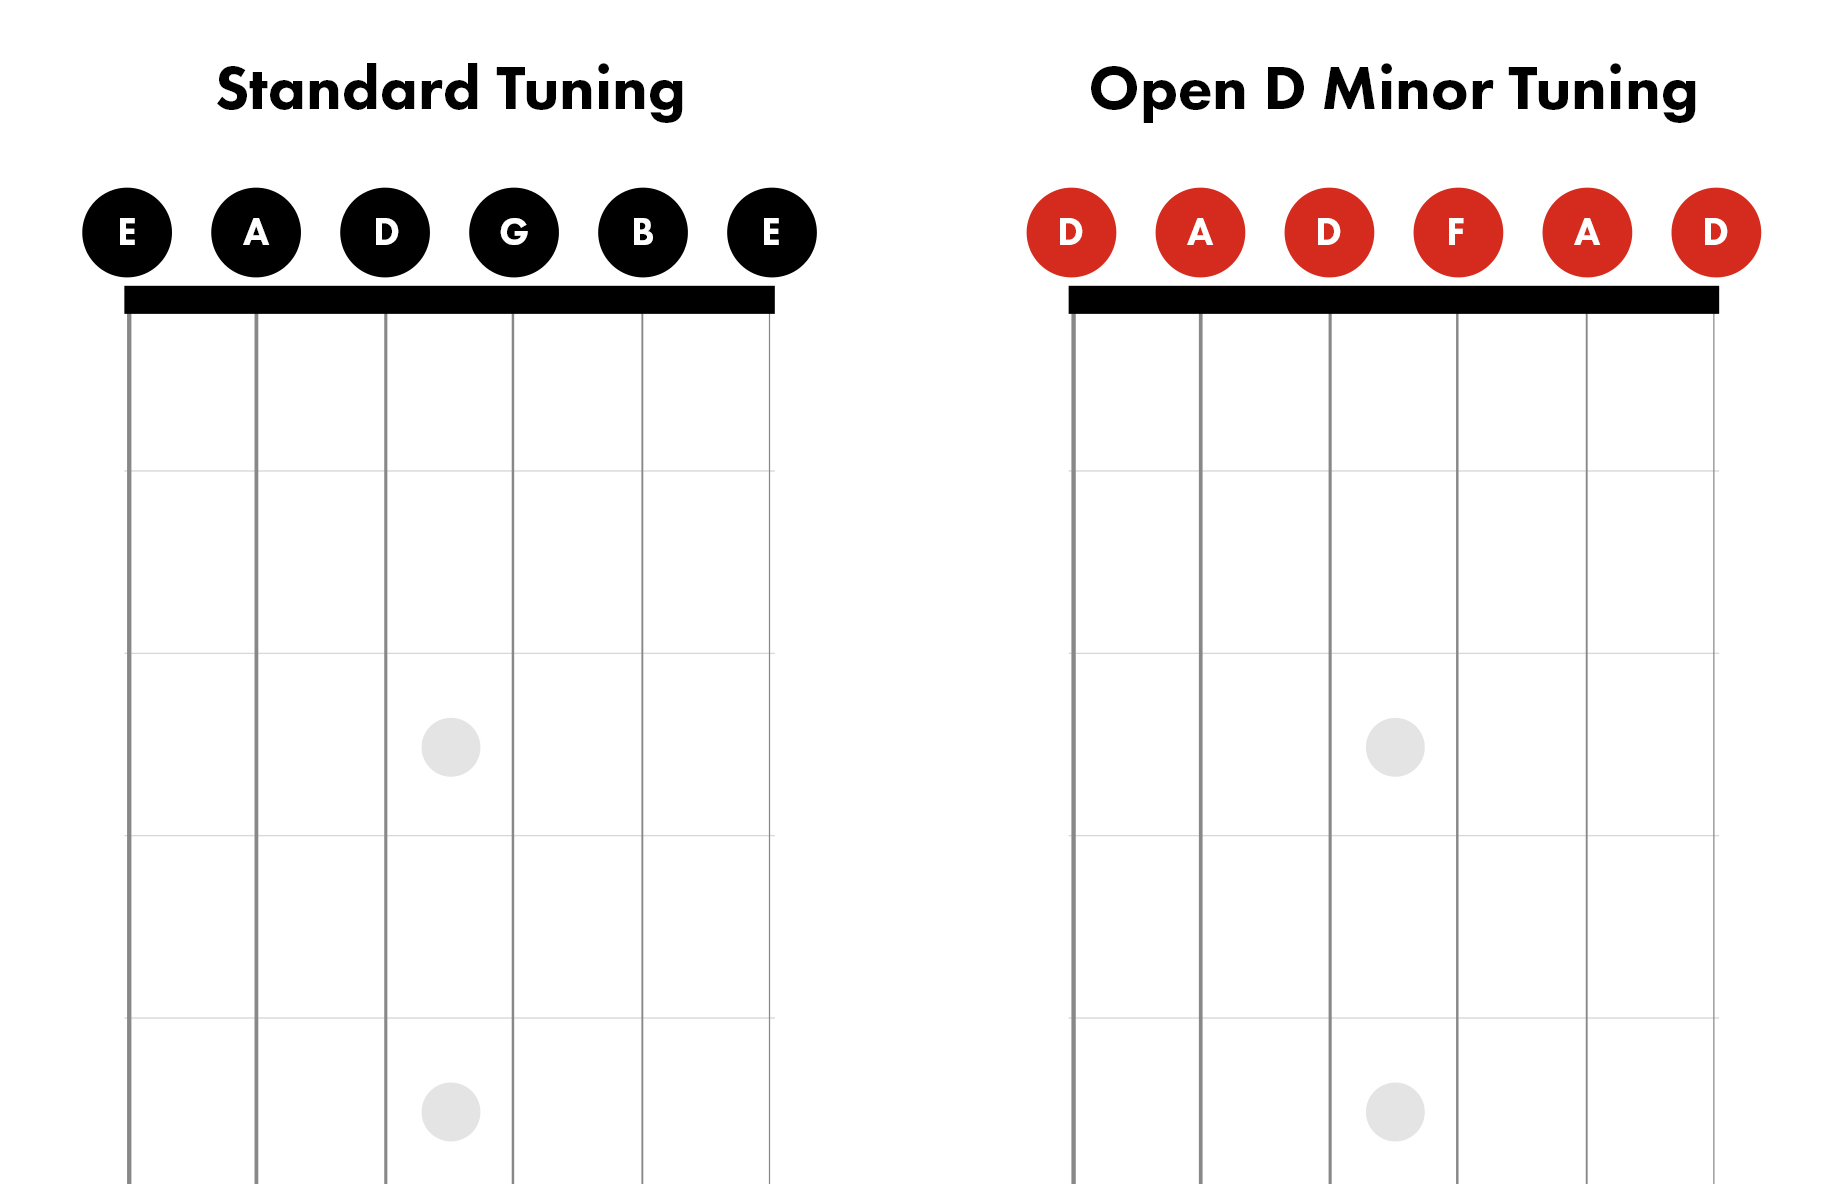 klep Atletisch Uitstekend Open D Minor Tuning on Guitar | How to Tune to Open D Minor | Fender